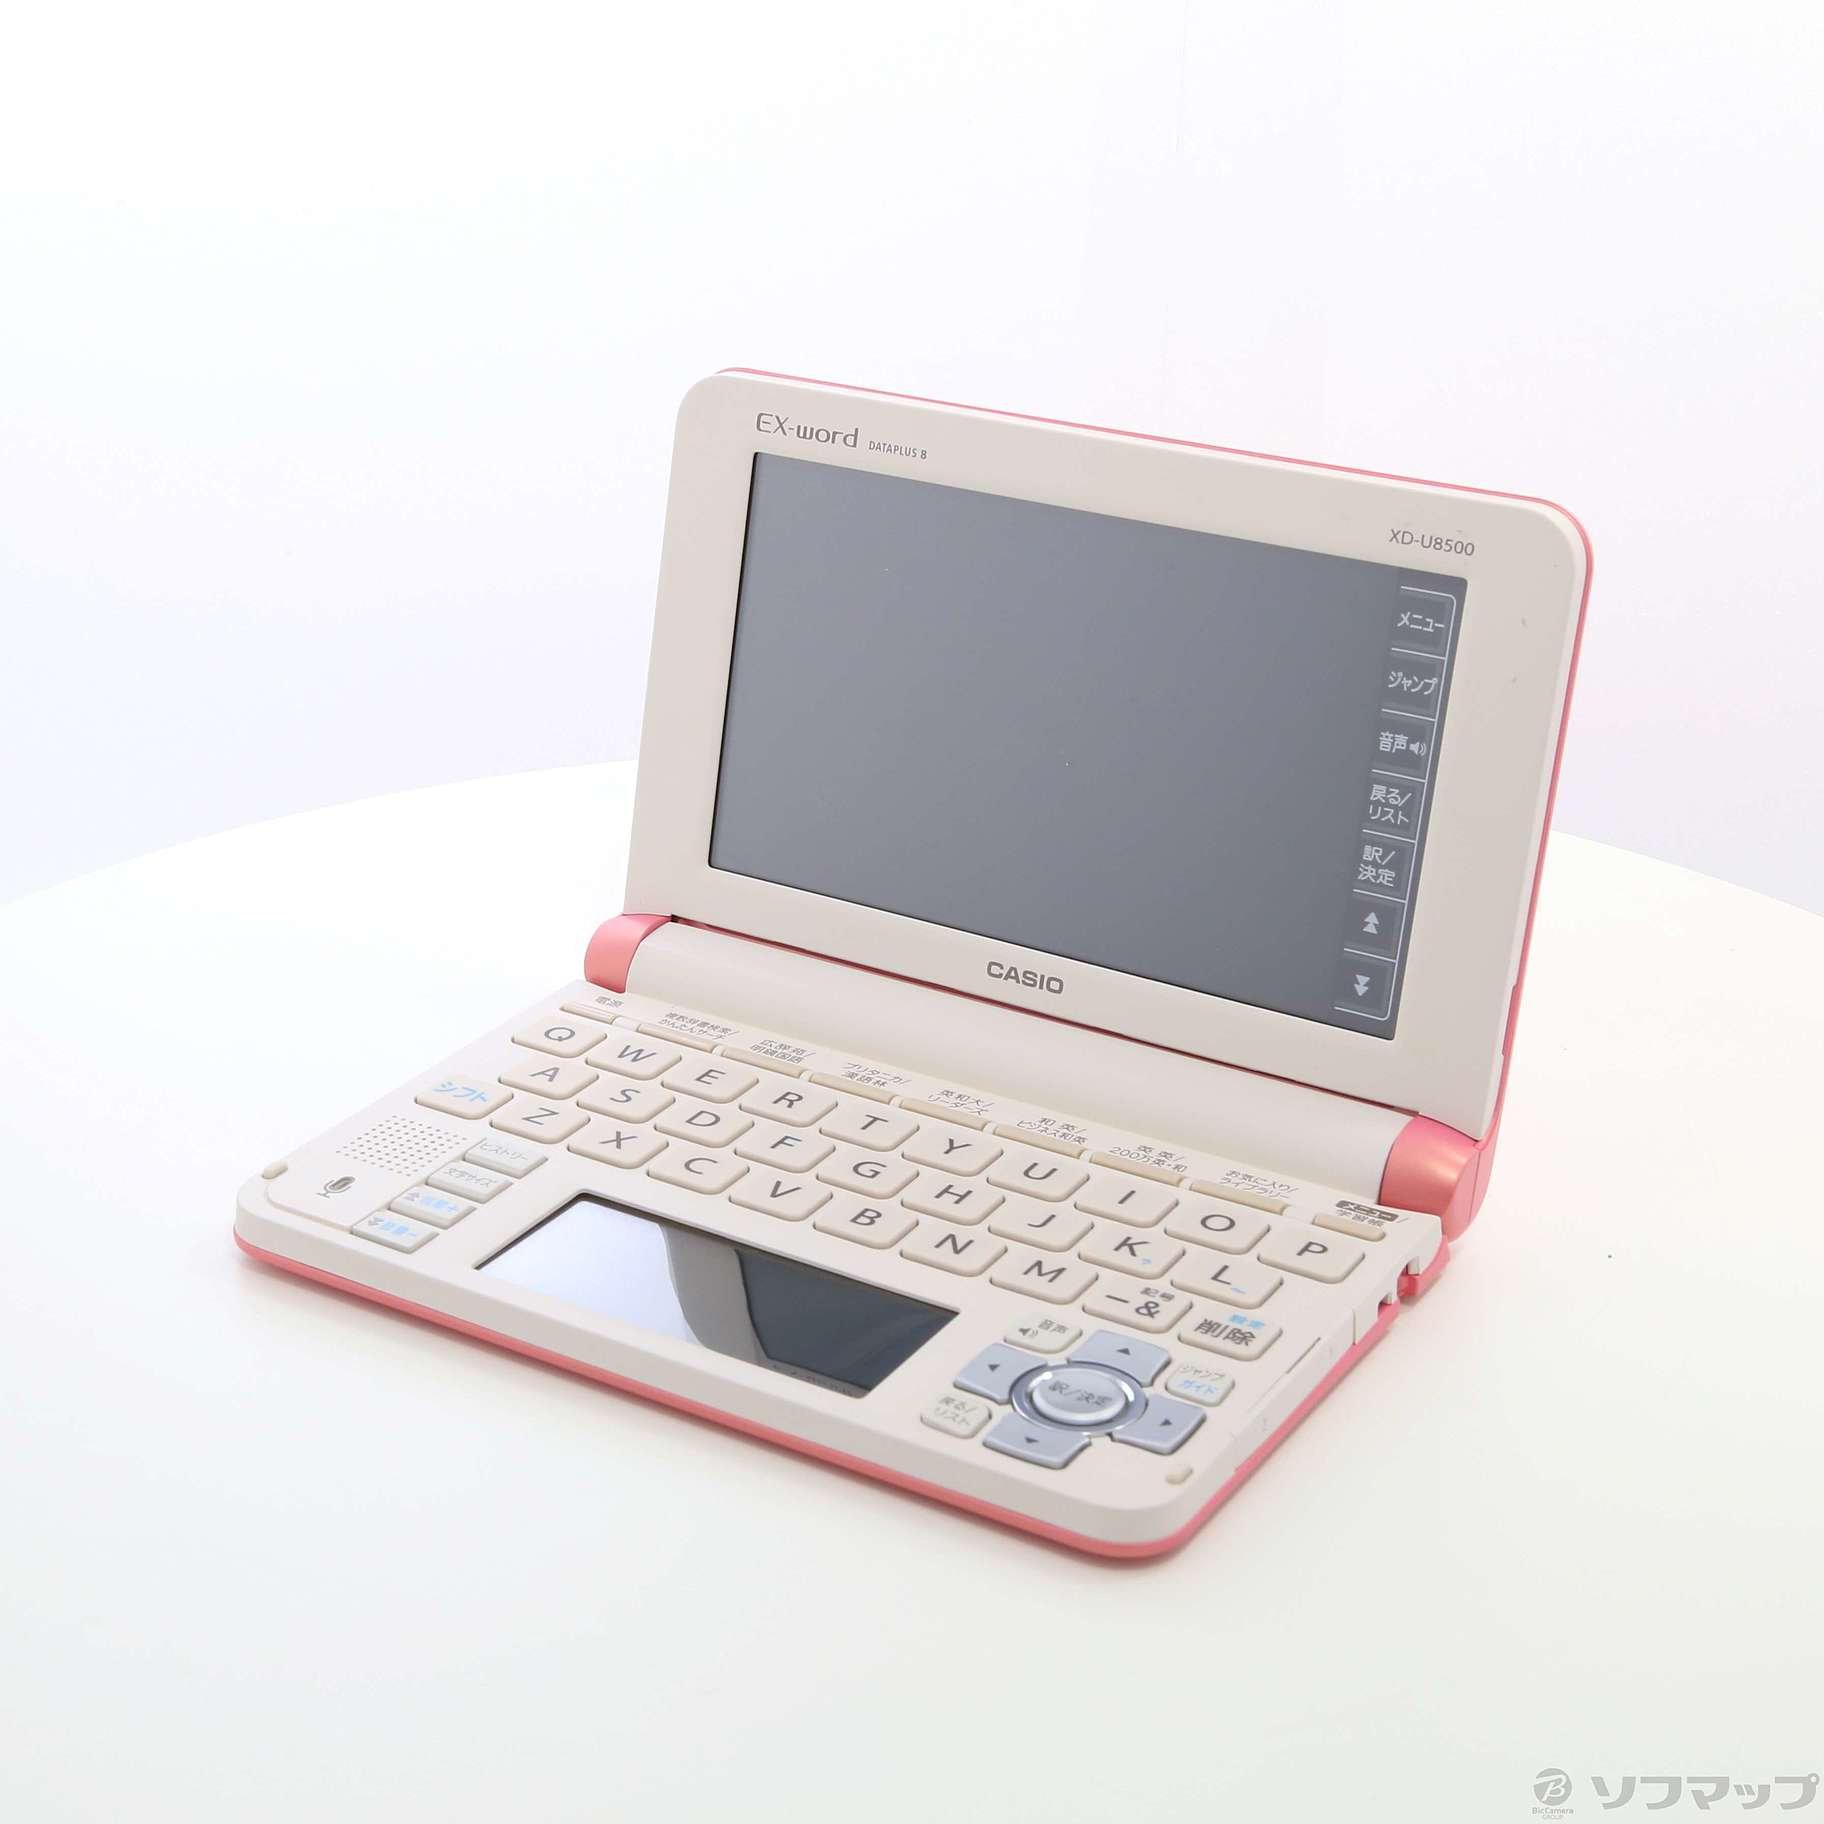 【特価低価】XD-U8500PK エクスワード ライトピンク 電子辞書 ビジネスモデル オフィス用品